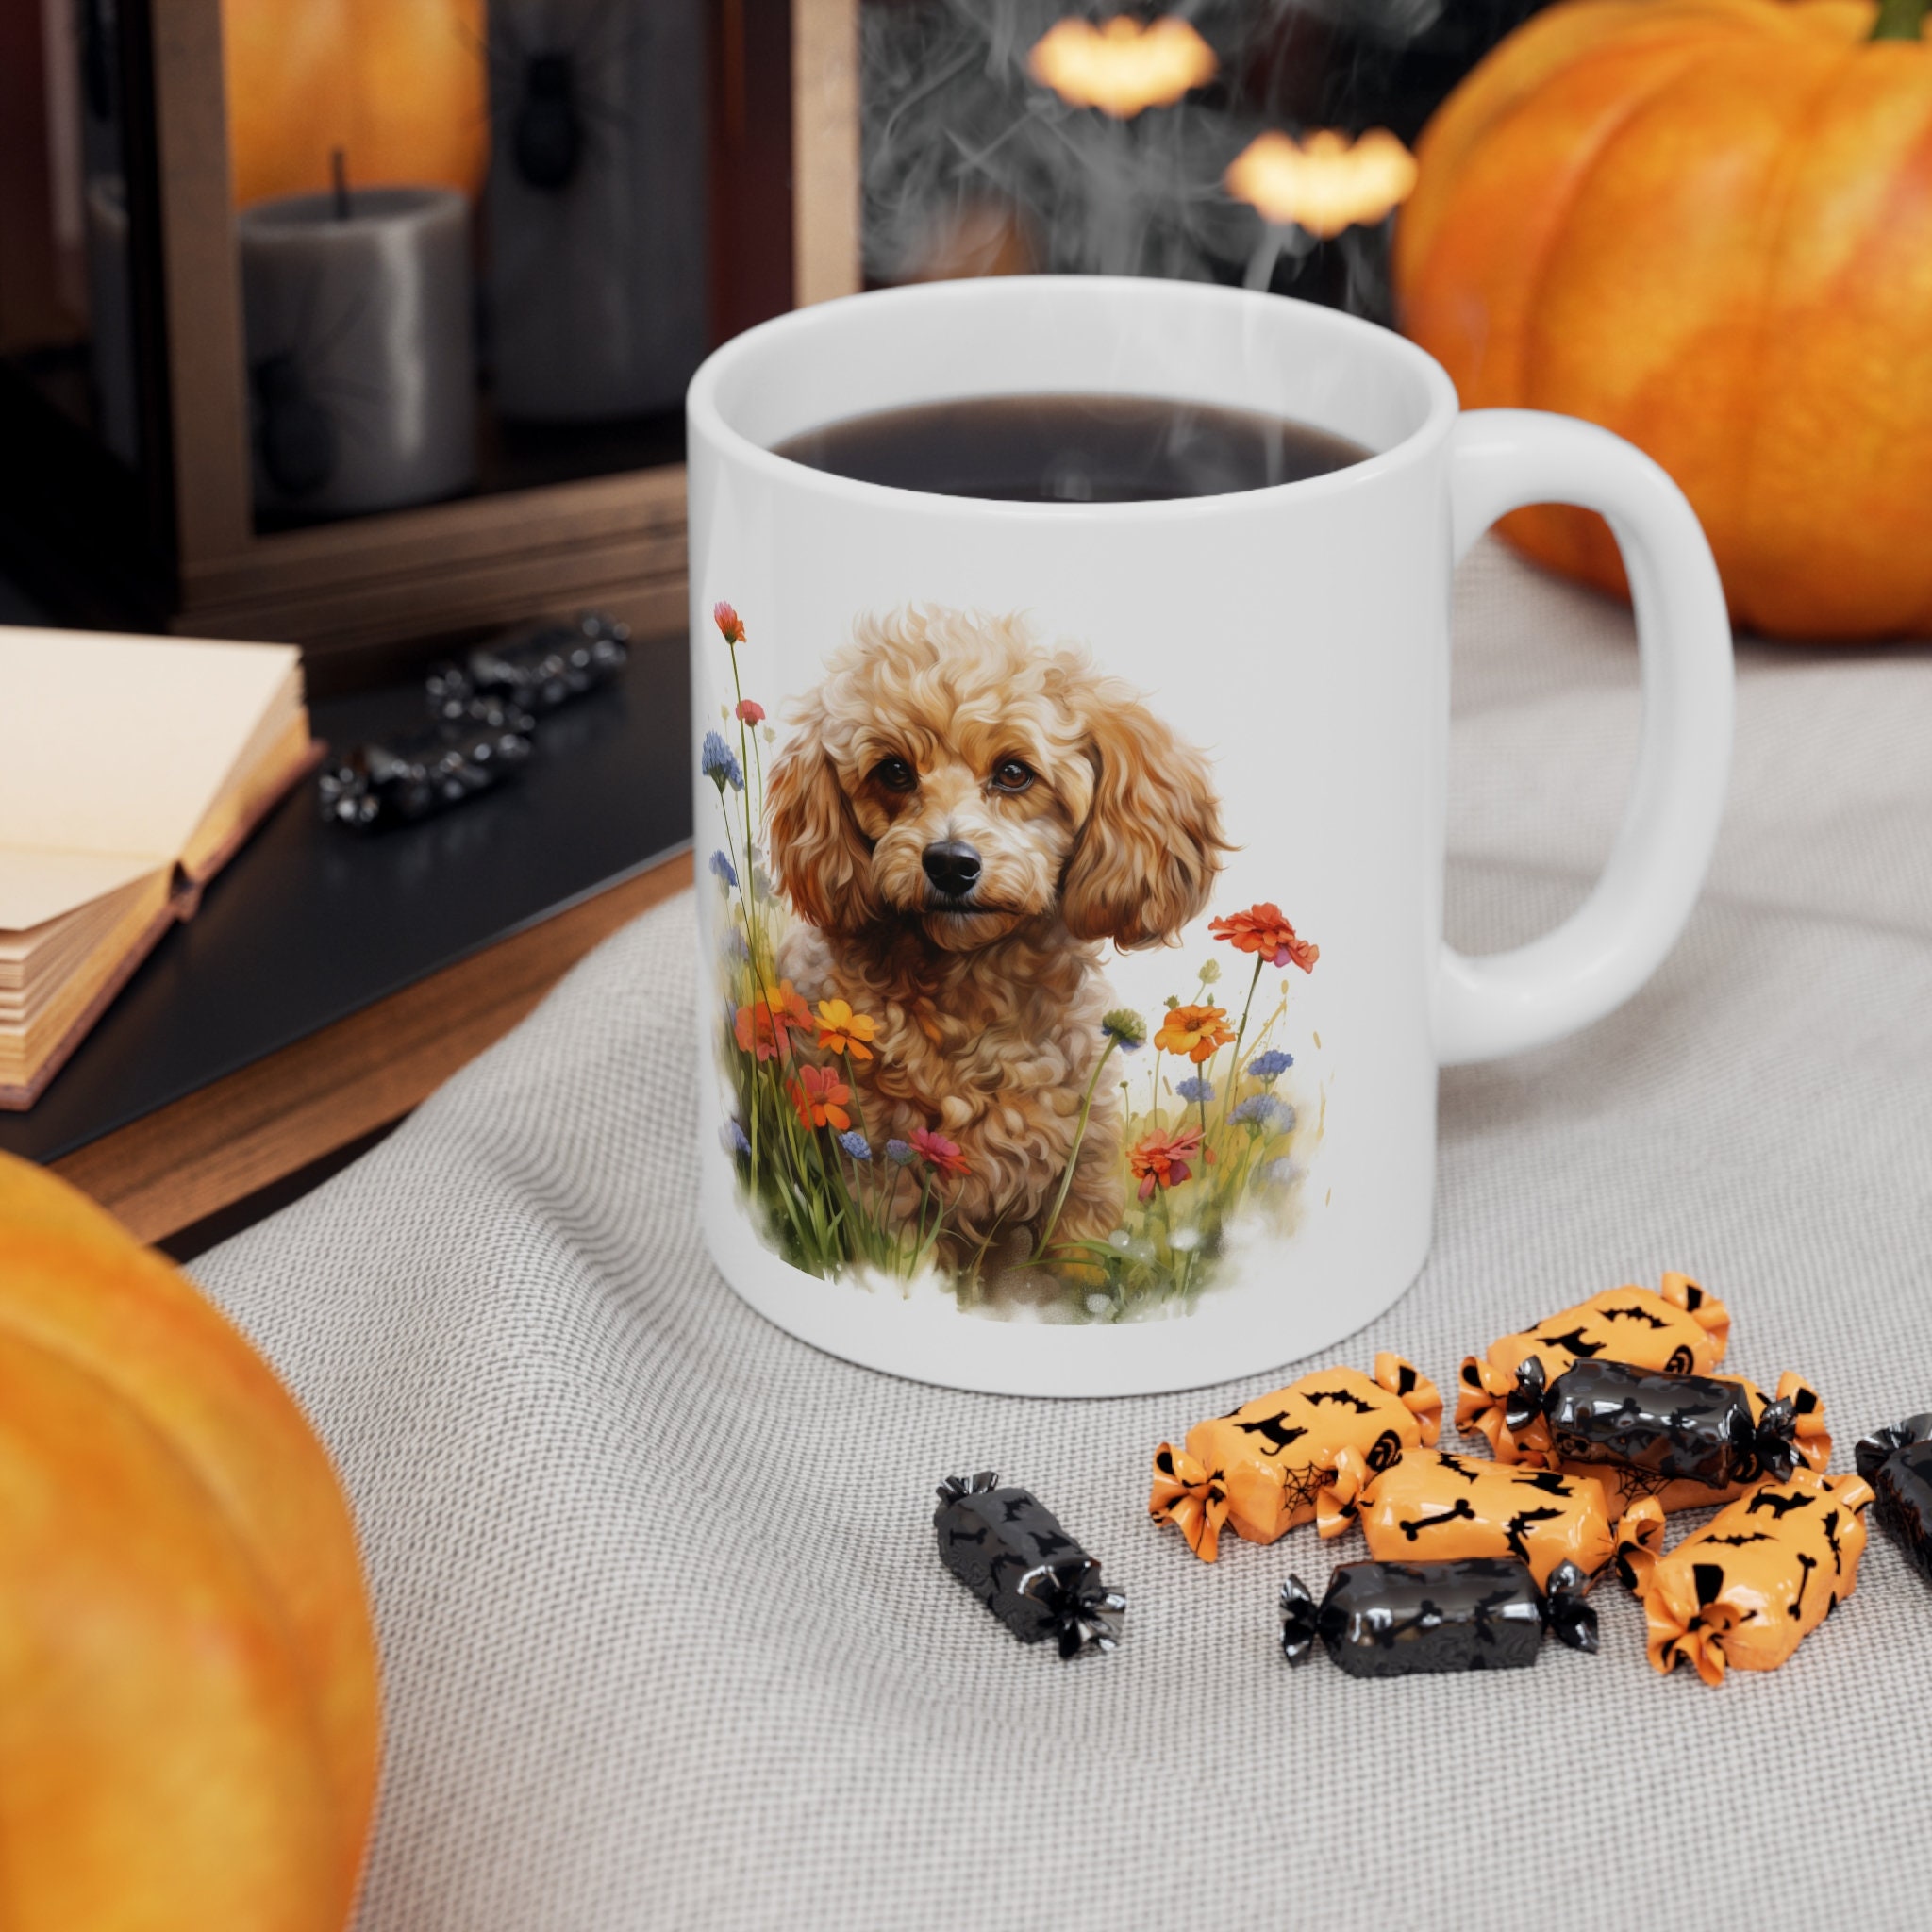 Discover トイプードル プードル マグカップ 約350ml 可愛い動物 犬 アニマル コーヒーカップ ギフト Cute Poodle